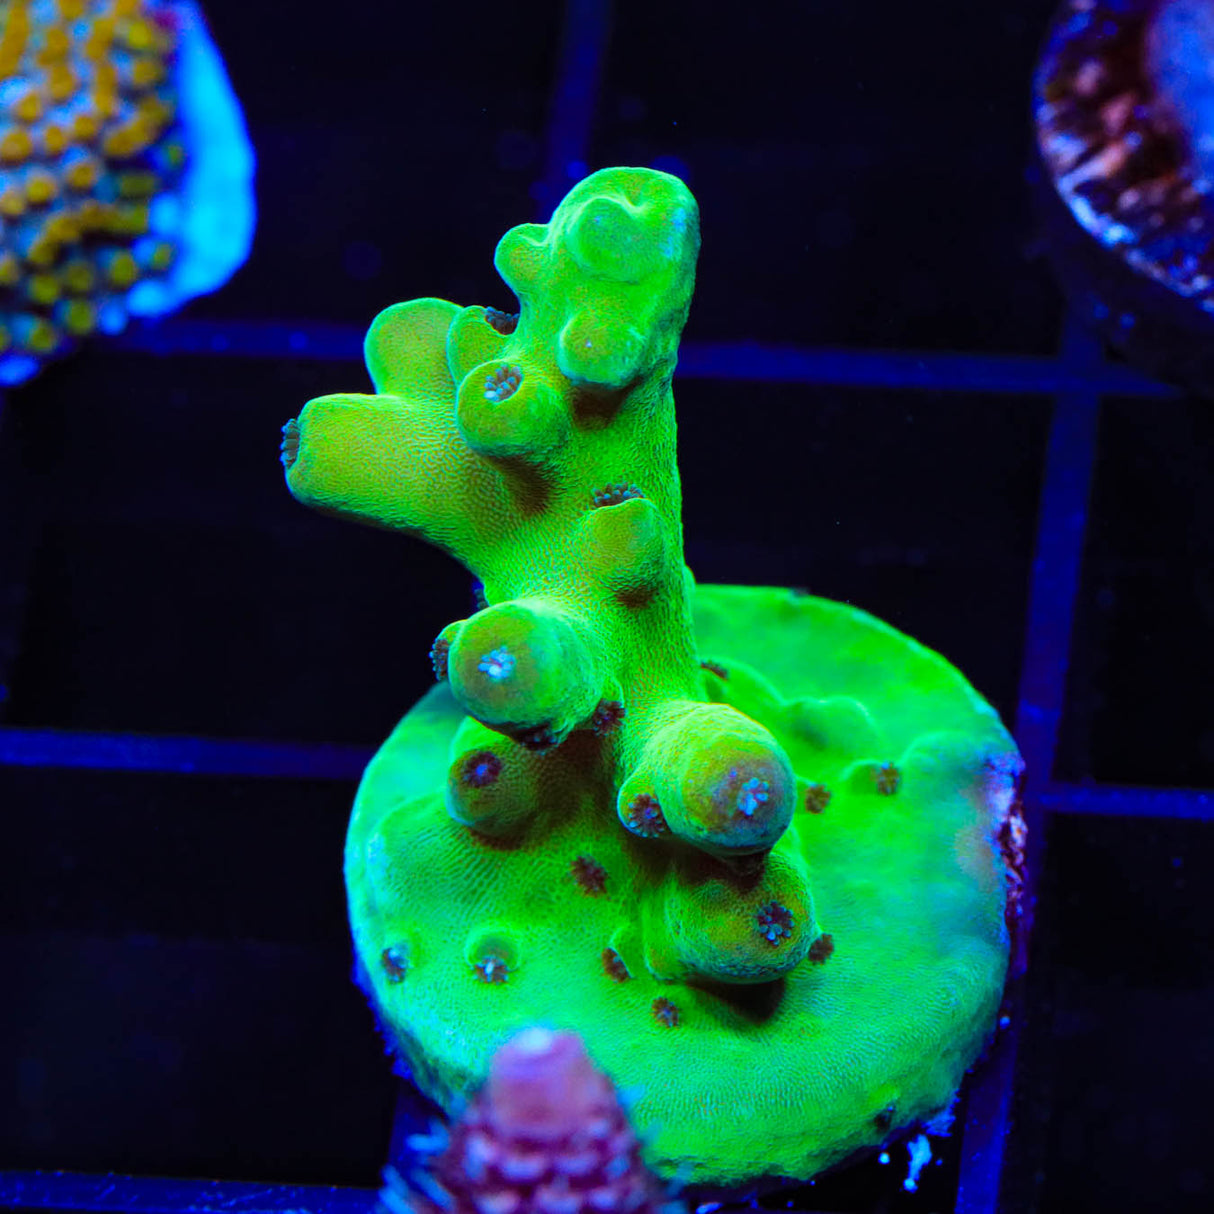 TSA Holy Diver Acropora Coral - Top Shelf Aquatics